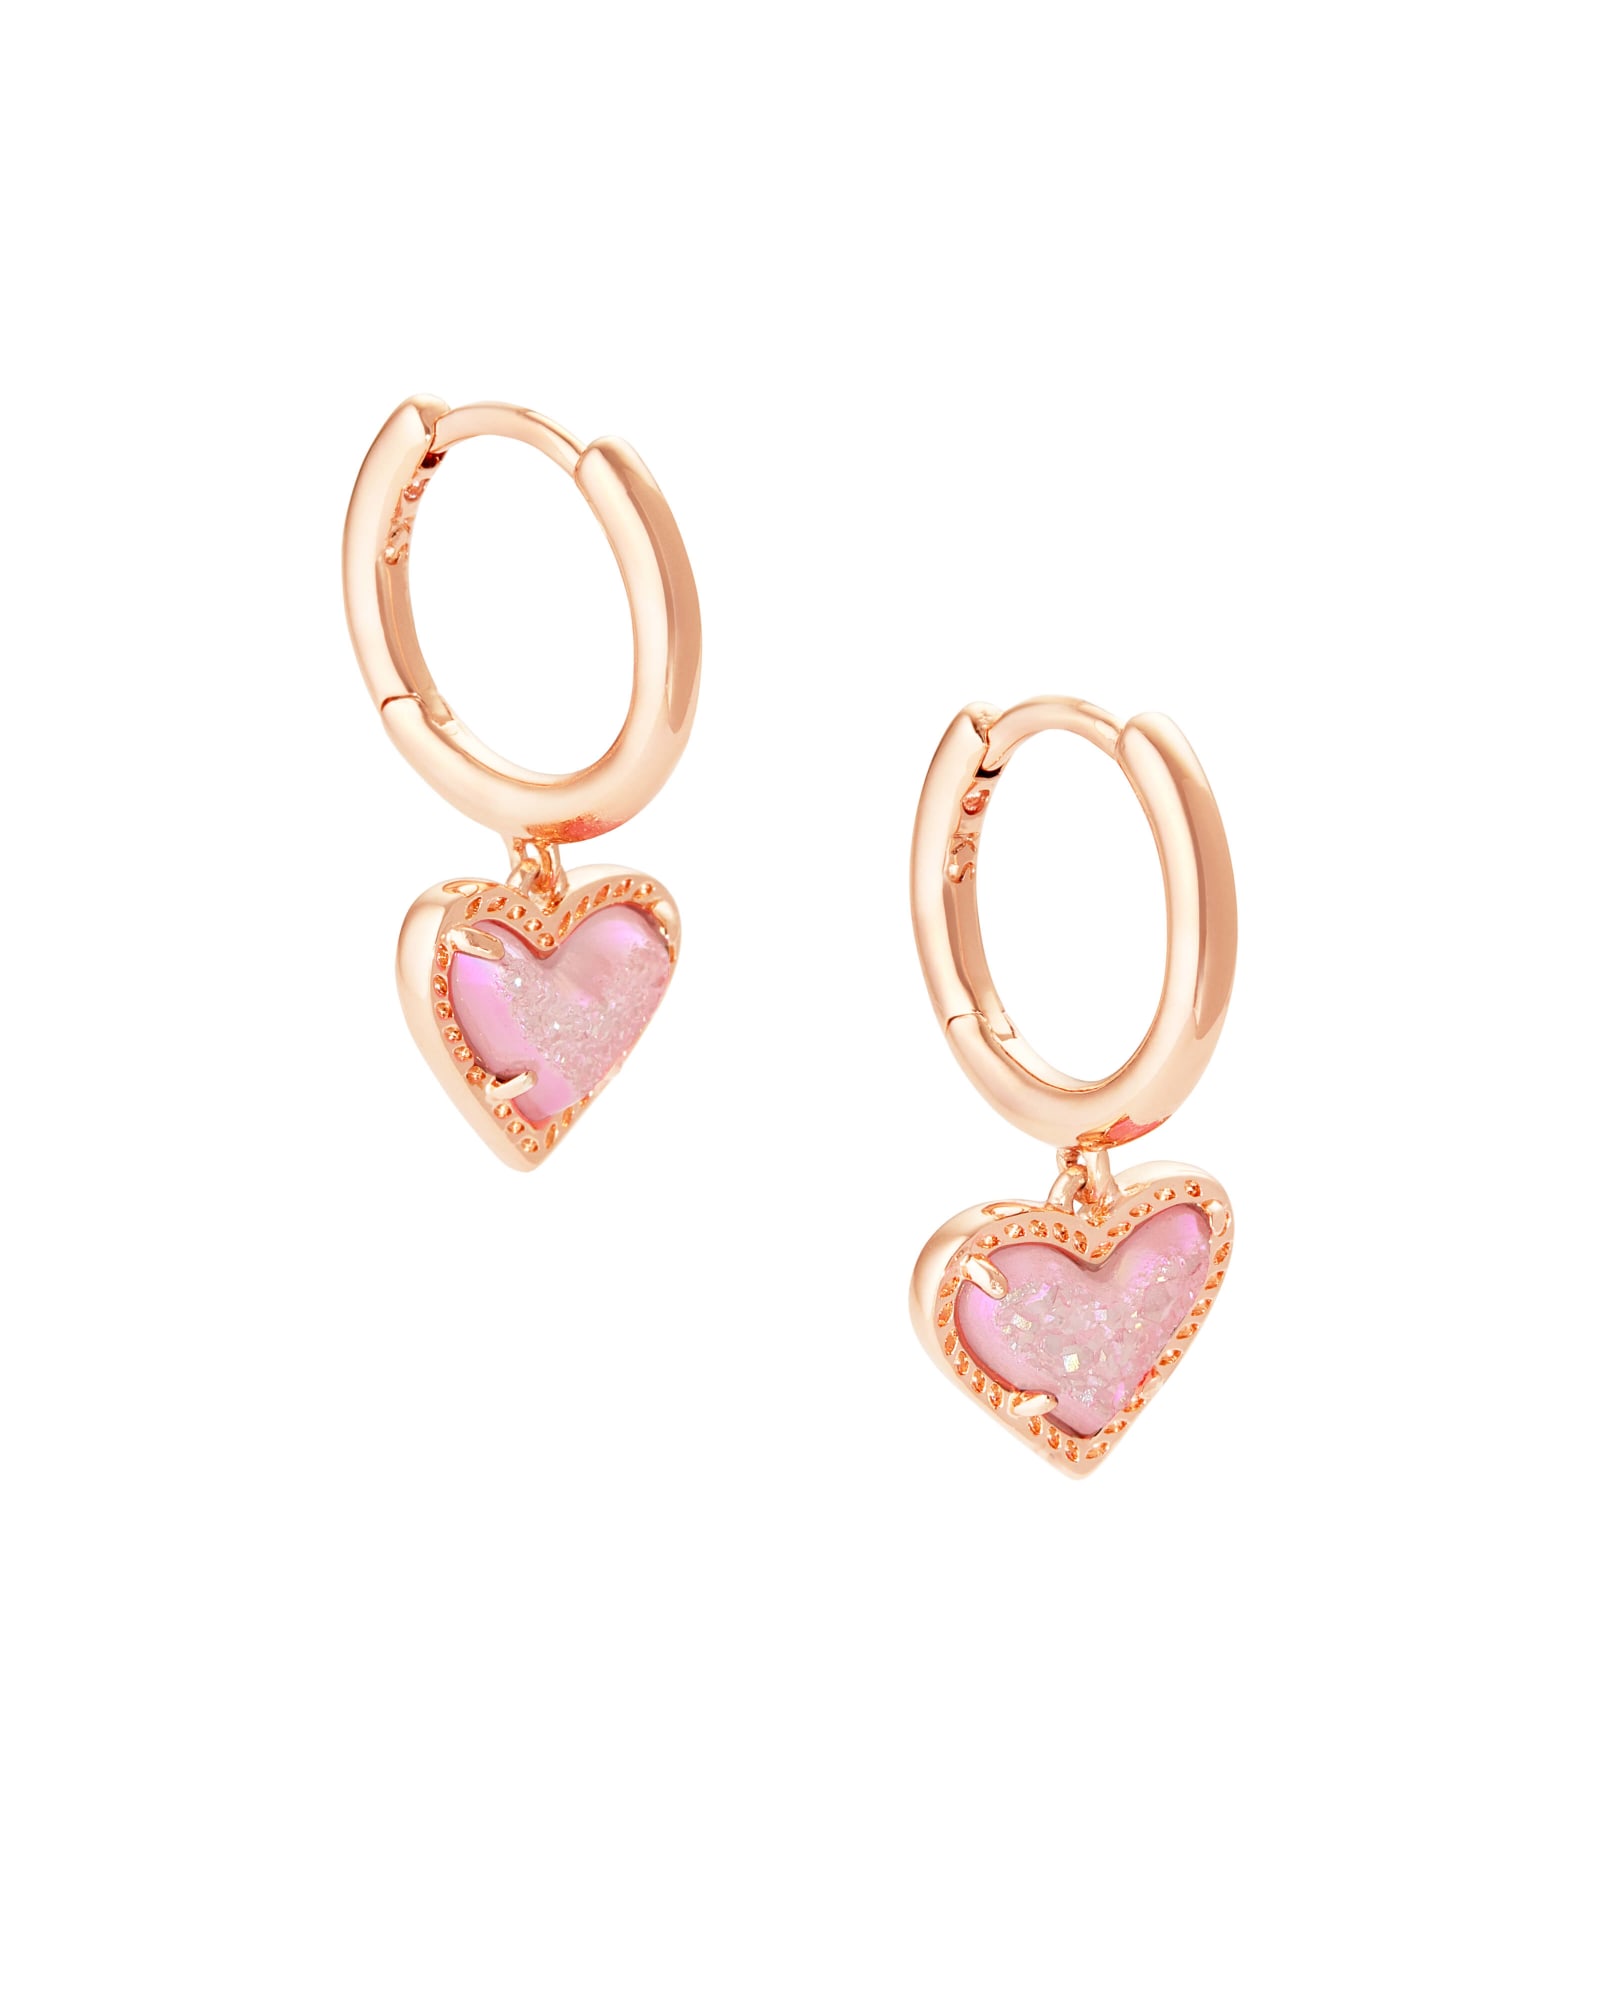 Kendra Scott Ari Heart Rose Gold Huggie Earrings in Light Pink | Drusy